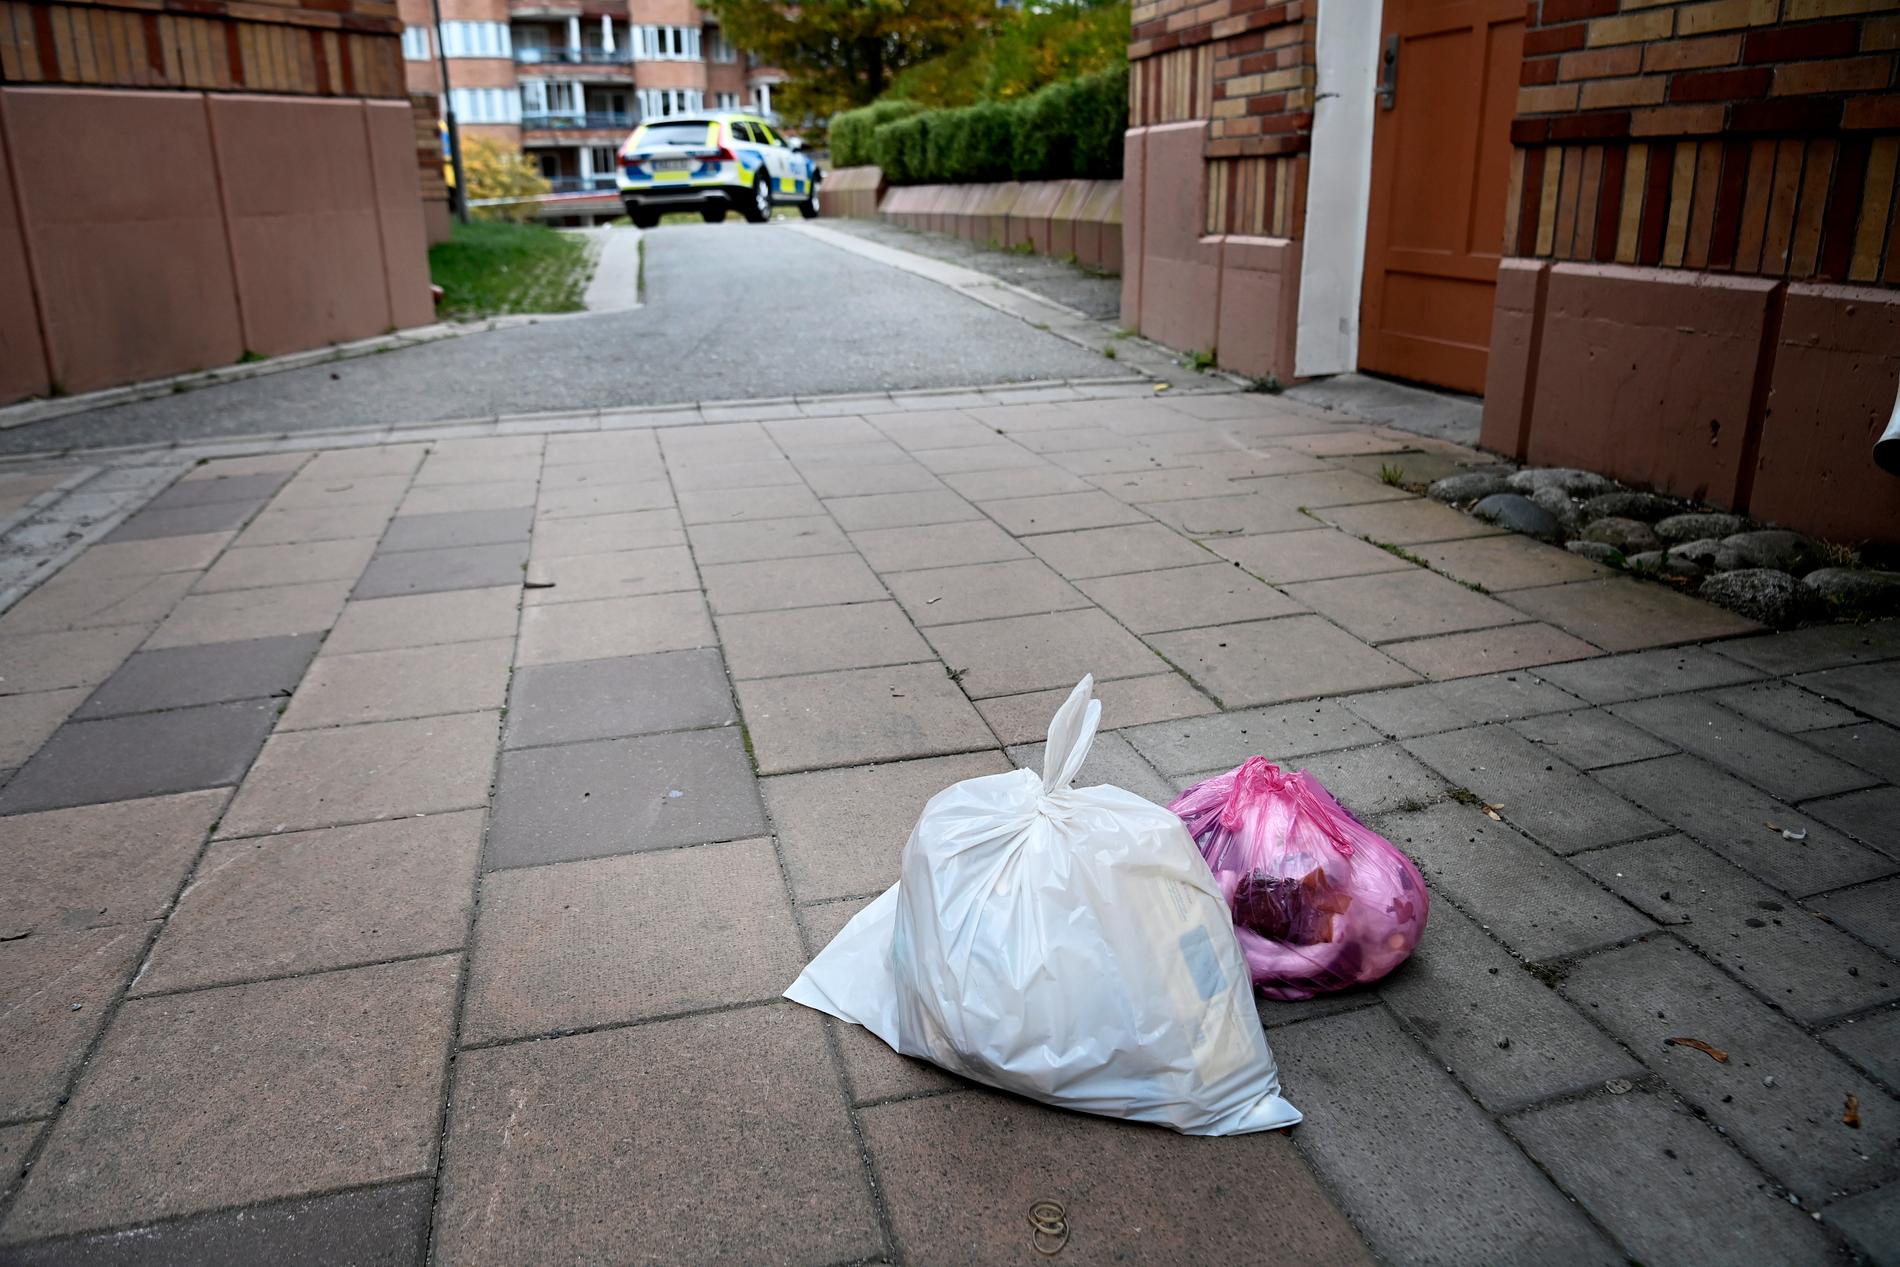 En kvinna Aftonbladet pratar med ser till att ta ut sina sopor när det är ljust, för hon vill vara ute på kvällstid. Hon, likt många andra, ville inte vara med på bild, inte ens med sin hand. 